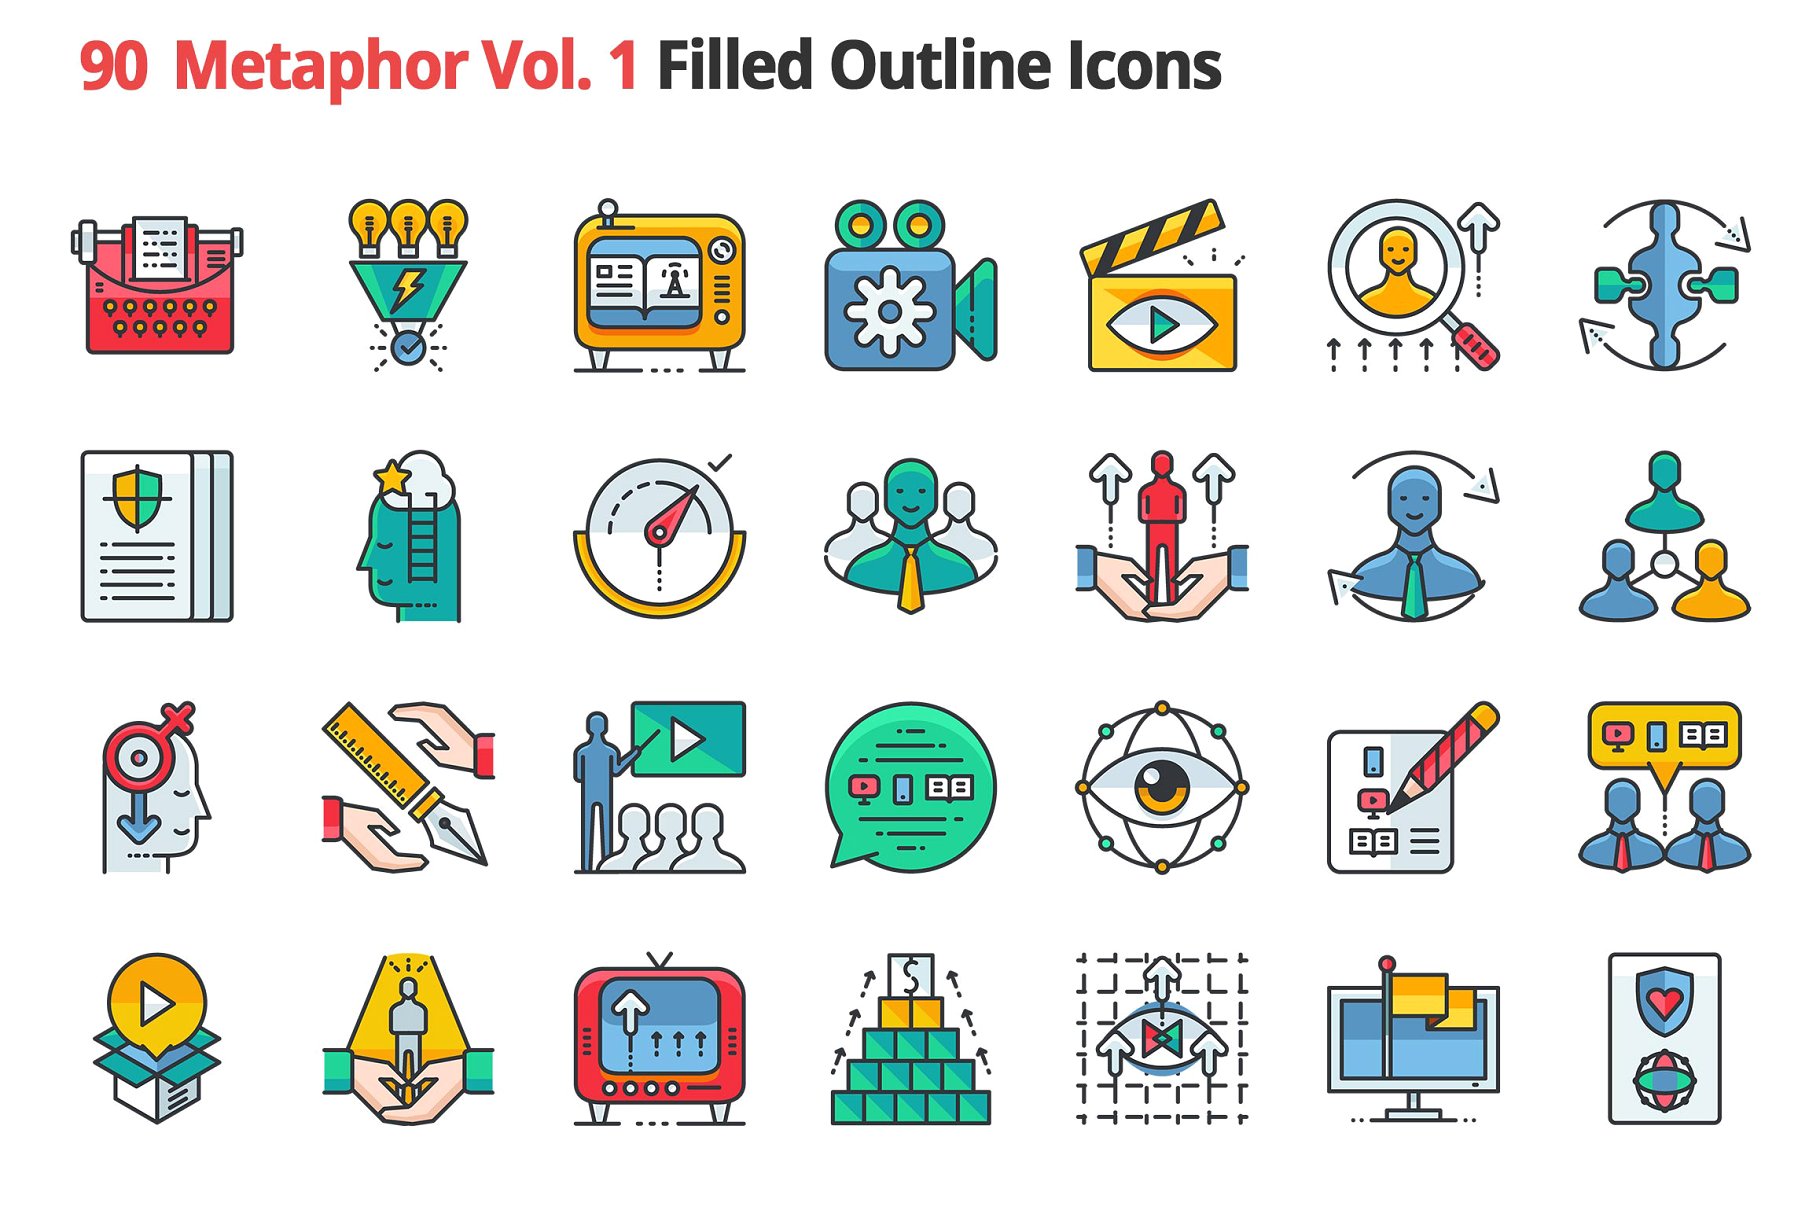 90个哲学主题隐喻填充小图标素材 90 Metaphors Vol. 1 Filled Icons插图(1)